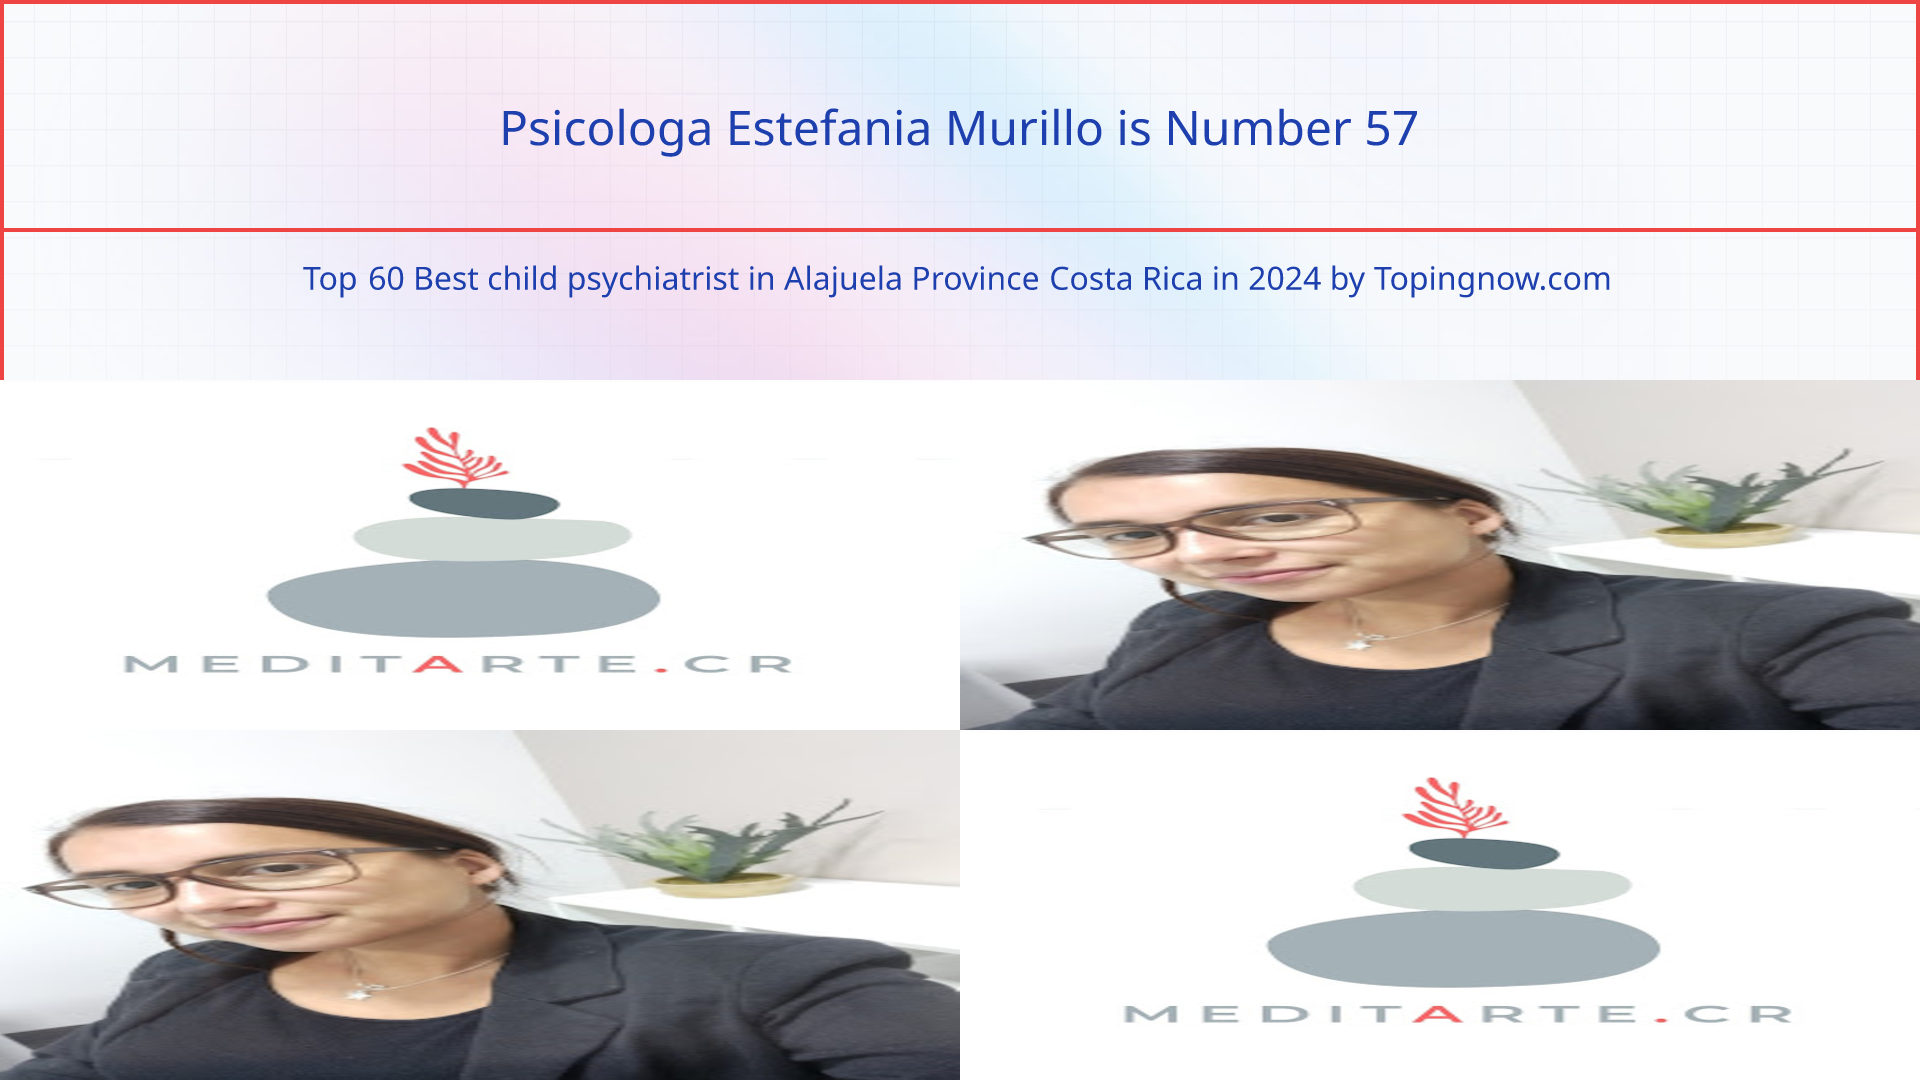 Psicologa Estefania Murillo: Top 60 Best child psychiatrist in Alajuela Province Costa Rica in 2024